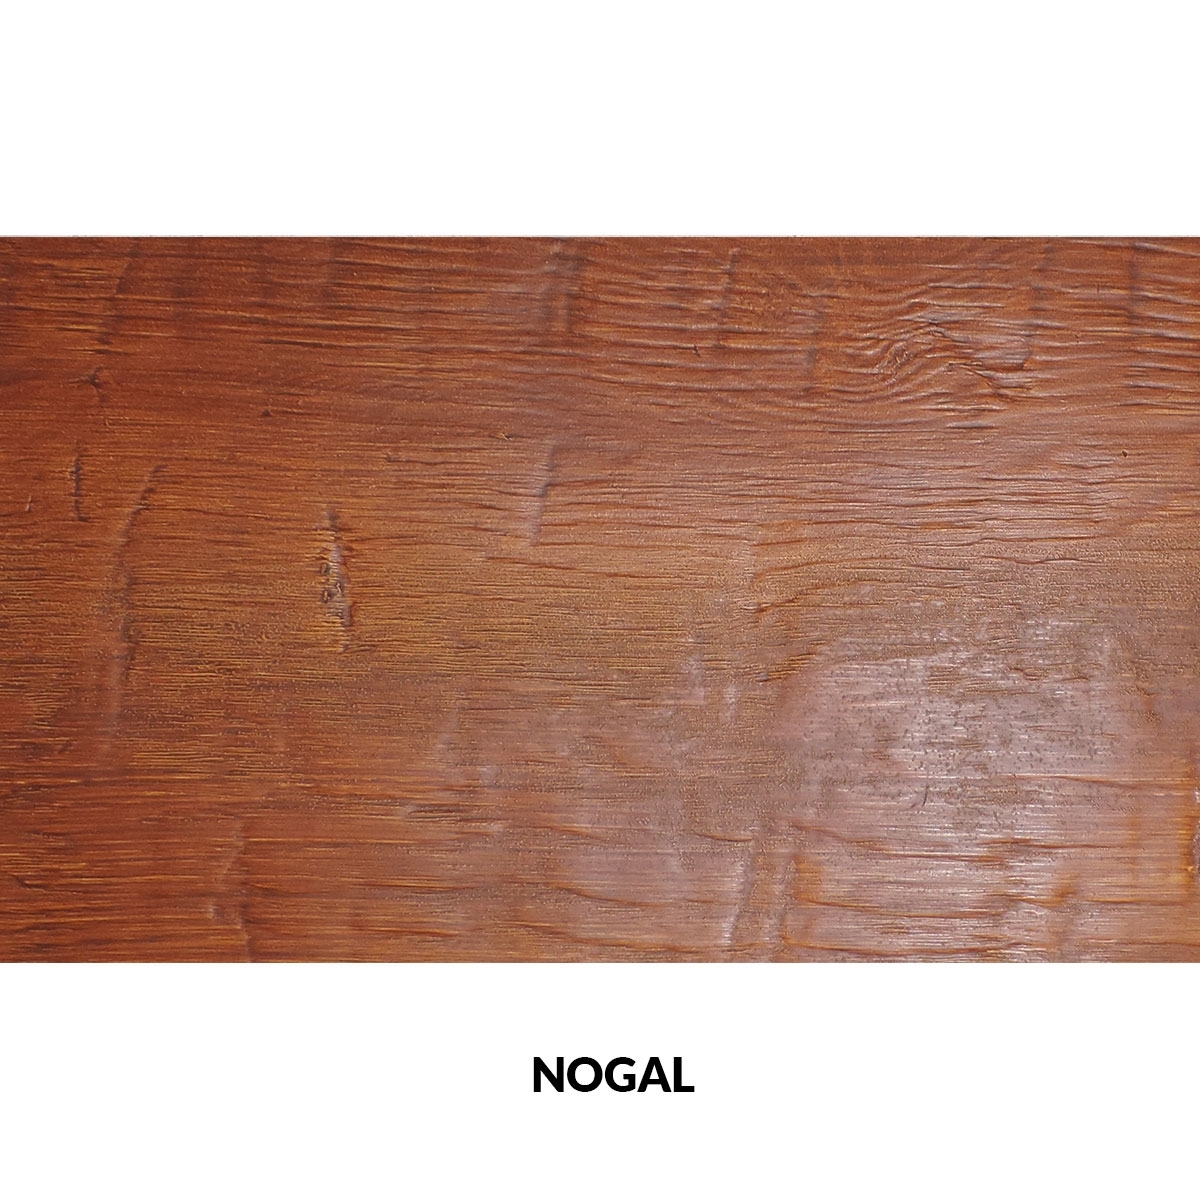 Panel rústico de seis lamas imitación madera de 300x62cm nogal